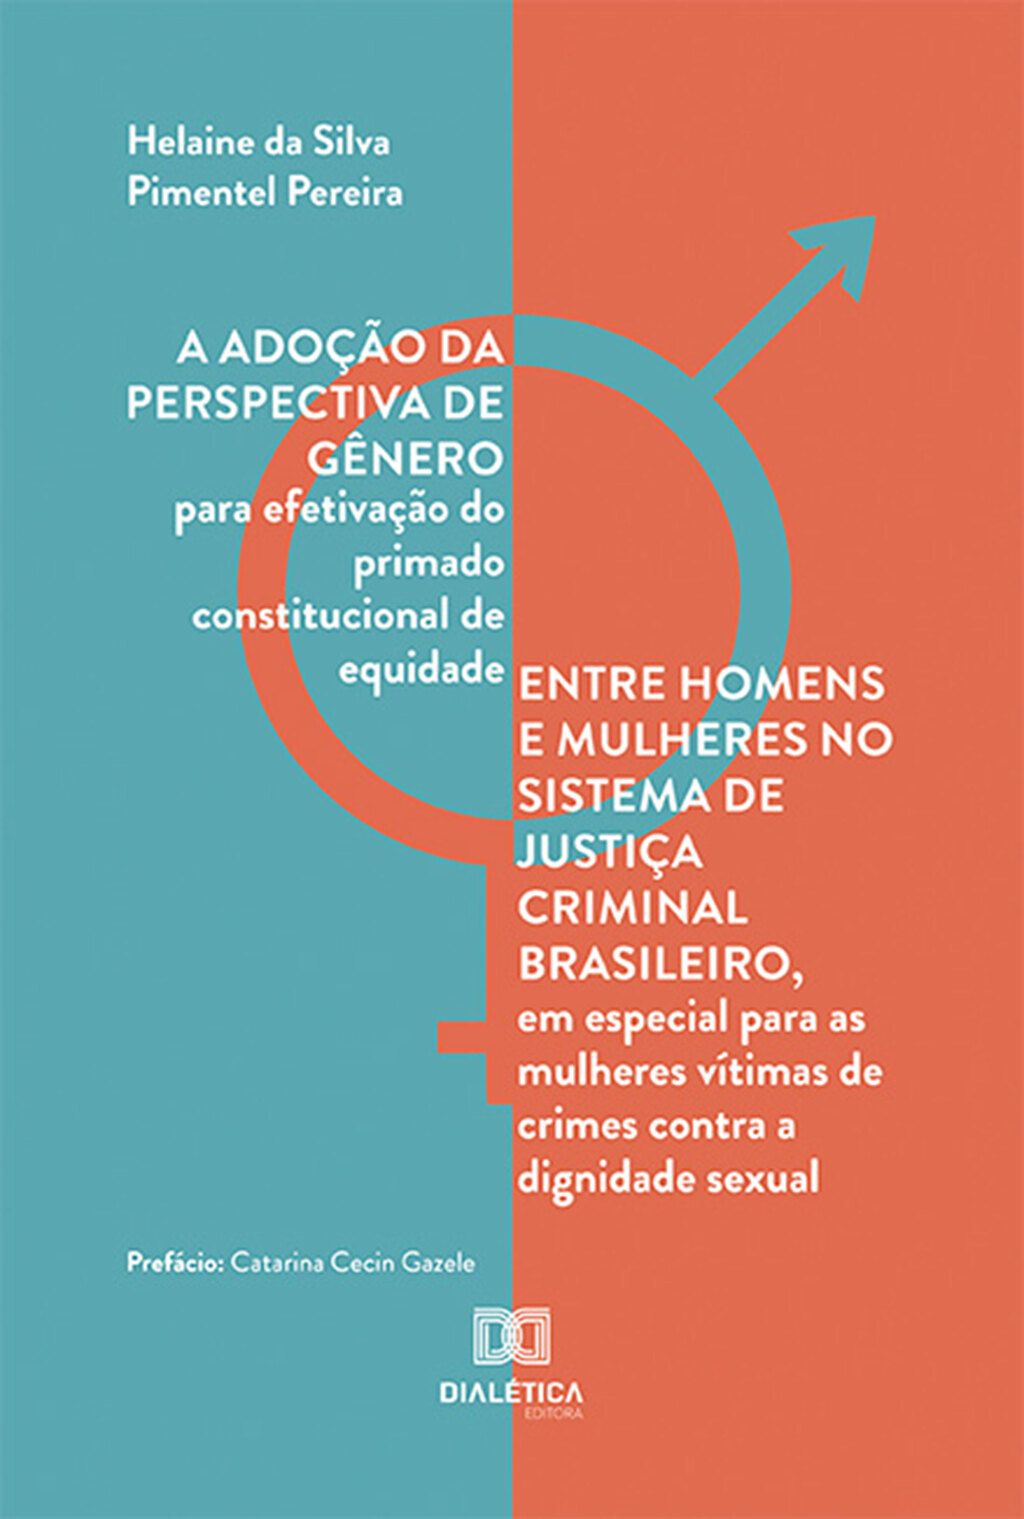 A adoção da perspectiva de gênero para efetivação do primado constitucional de equidade entre homens e mulheres no sistema de justiça criminal brasileiro, em especial para as mulheres vítimas de crimes contra a dignidade sexual